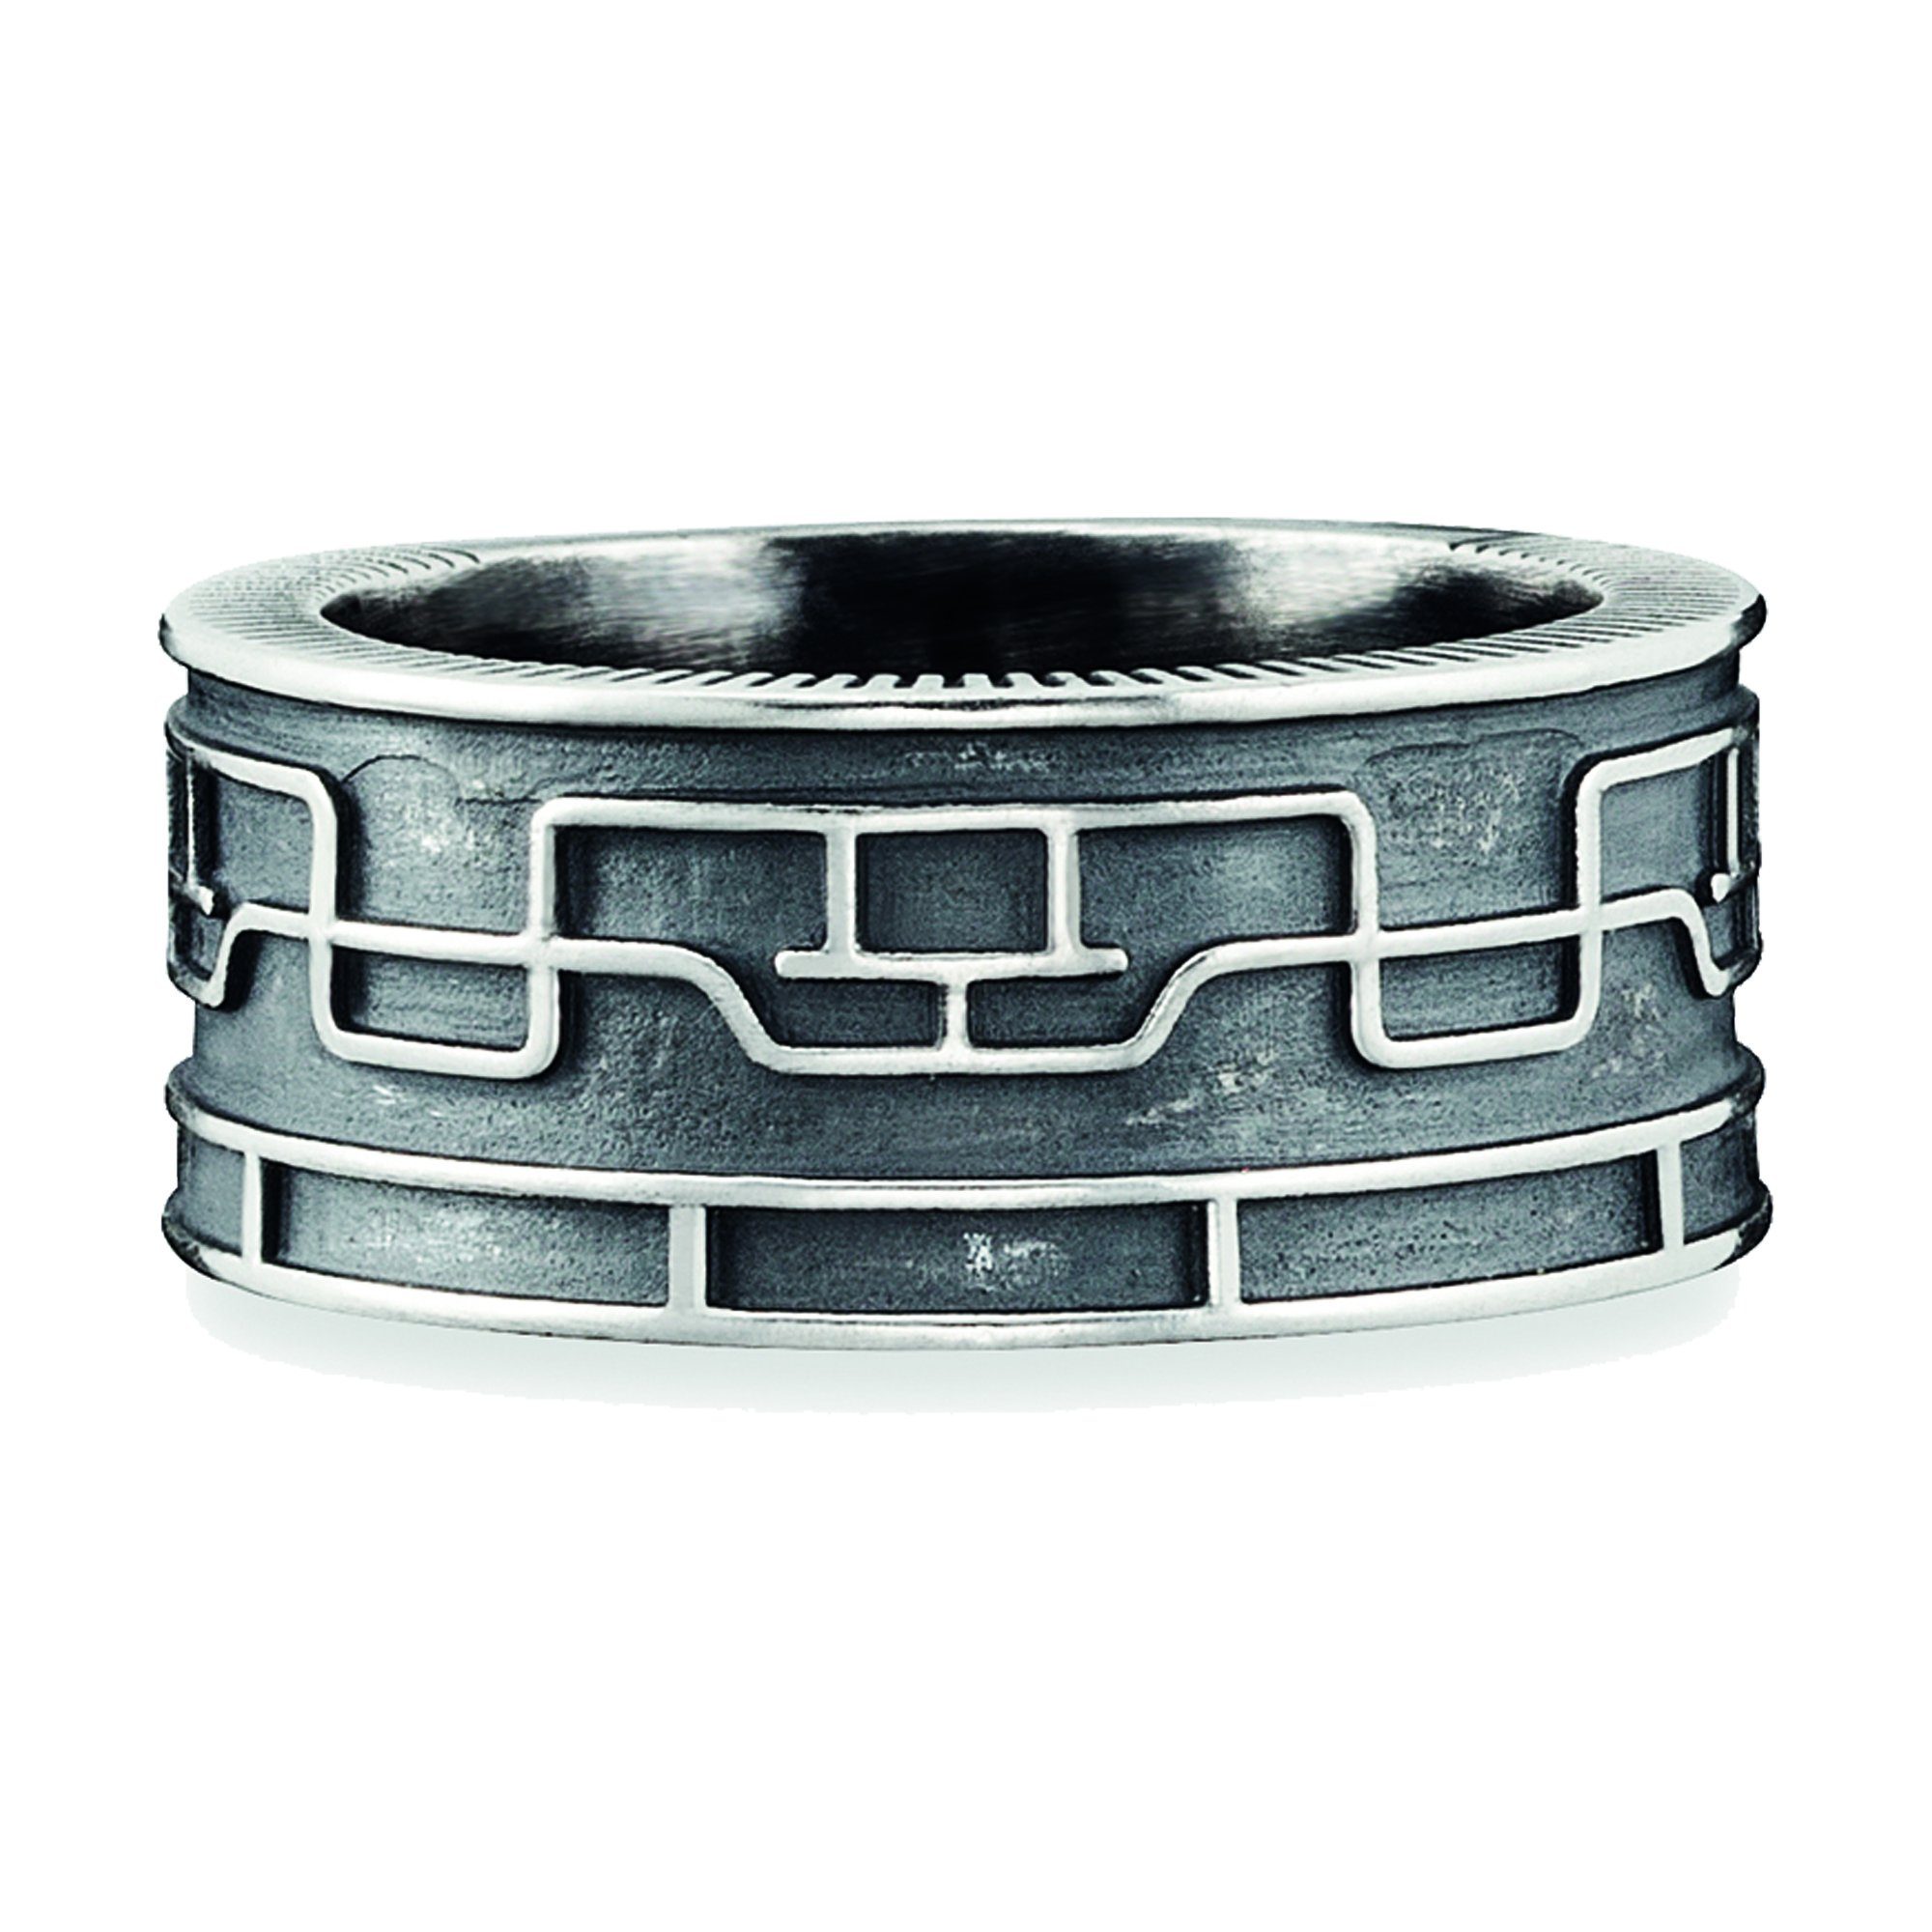 CAÏ Fingerring 925/- Sterling Silber oxidiert Linien Japan, Ring mit  Linien-Muster im japanischen Stil